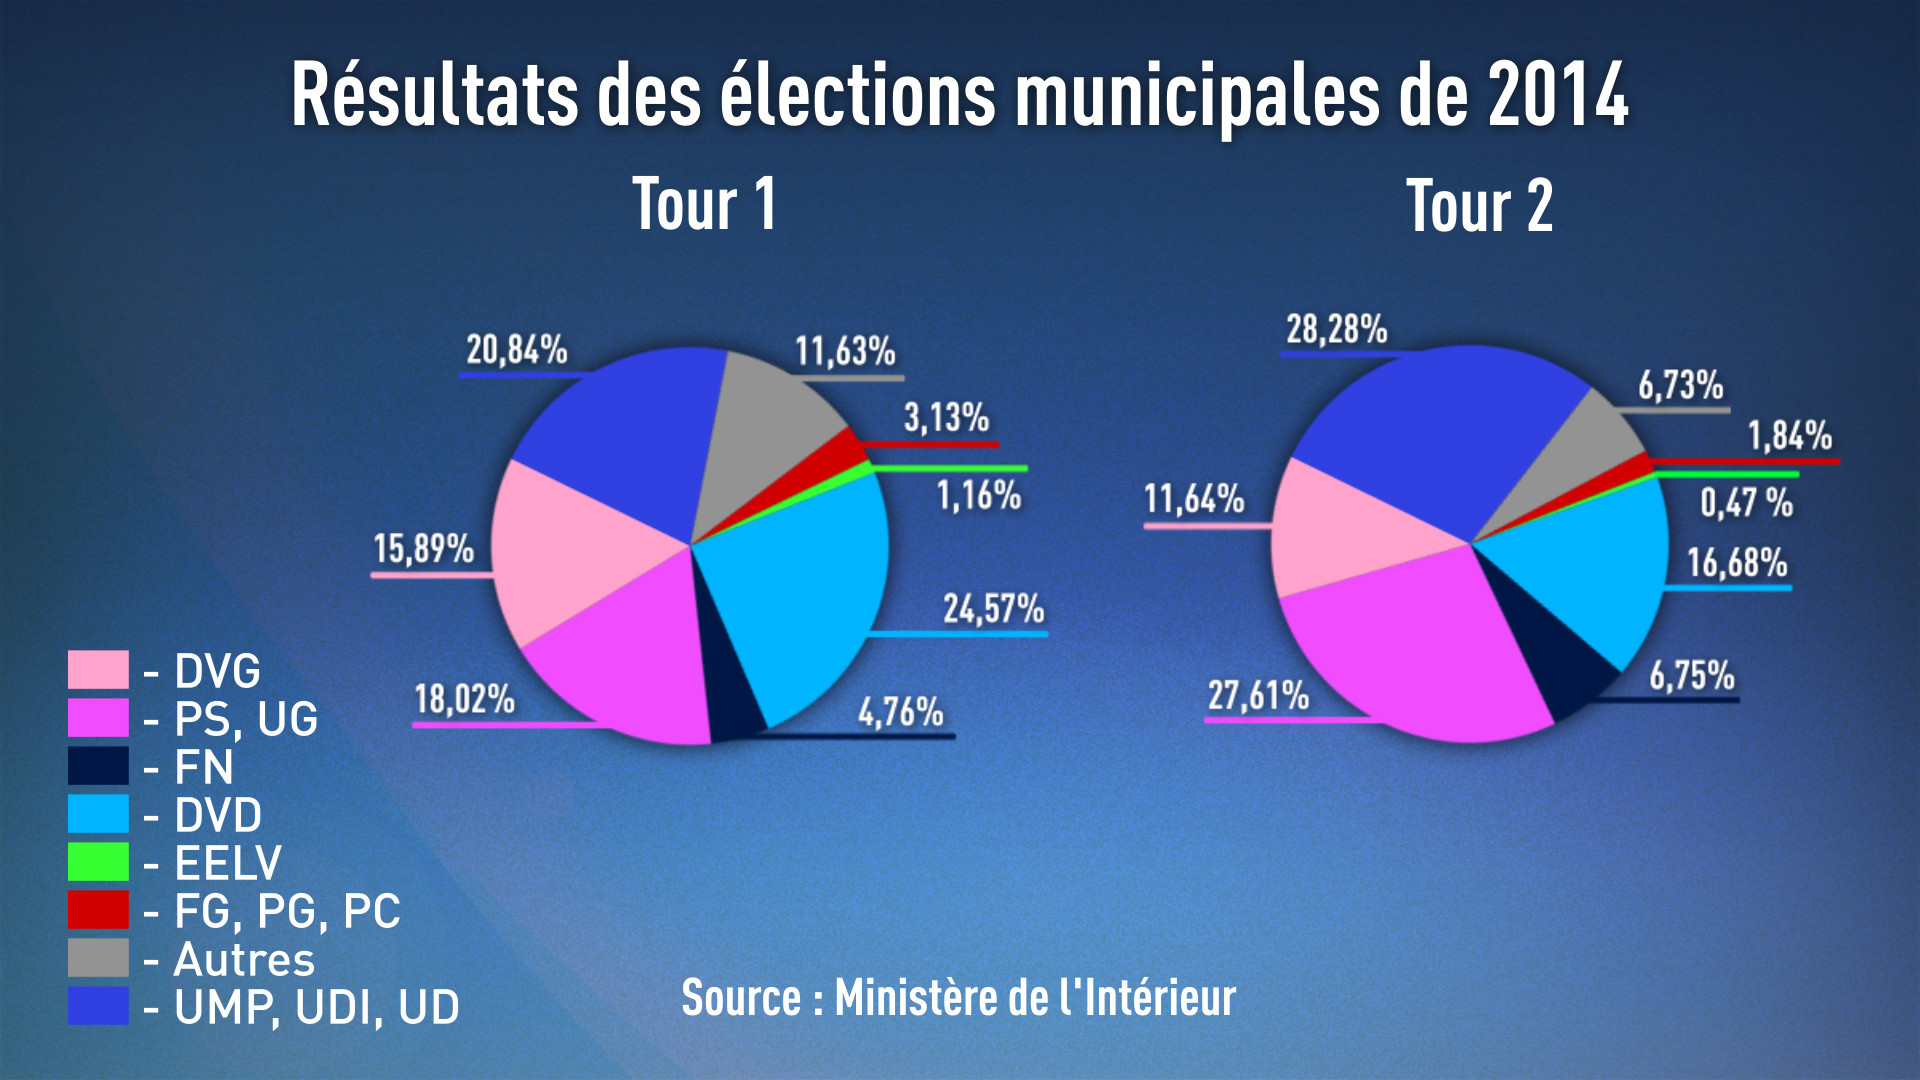 Résultats des différentes élections depuis l’arrivée de François Hollande au pouvoir